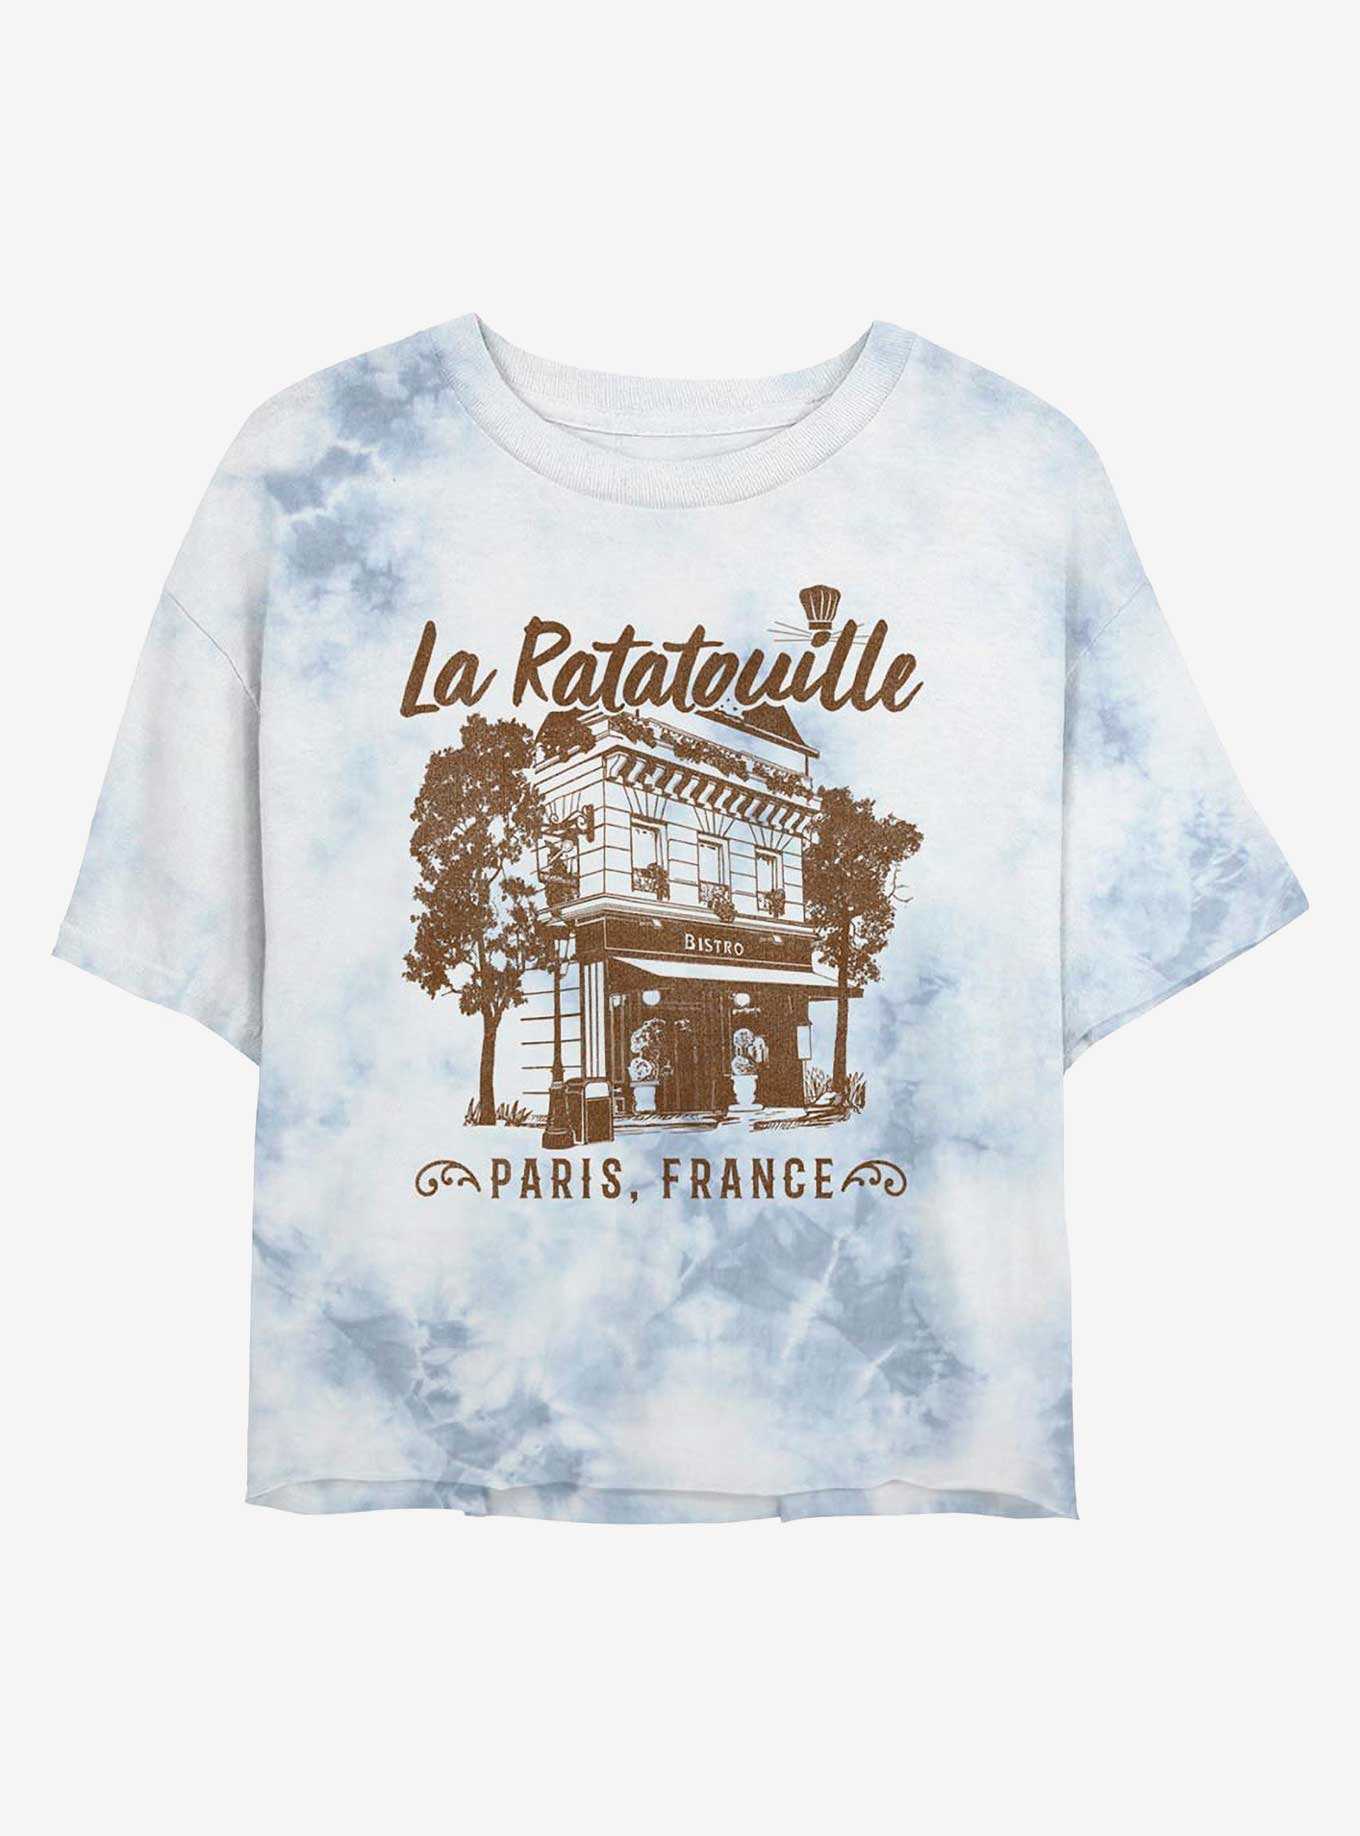 Disney Pixar Ratatouille Cafe Paris France Womens Tie-Dye Crop T-Shirt, , hi-res